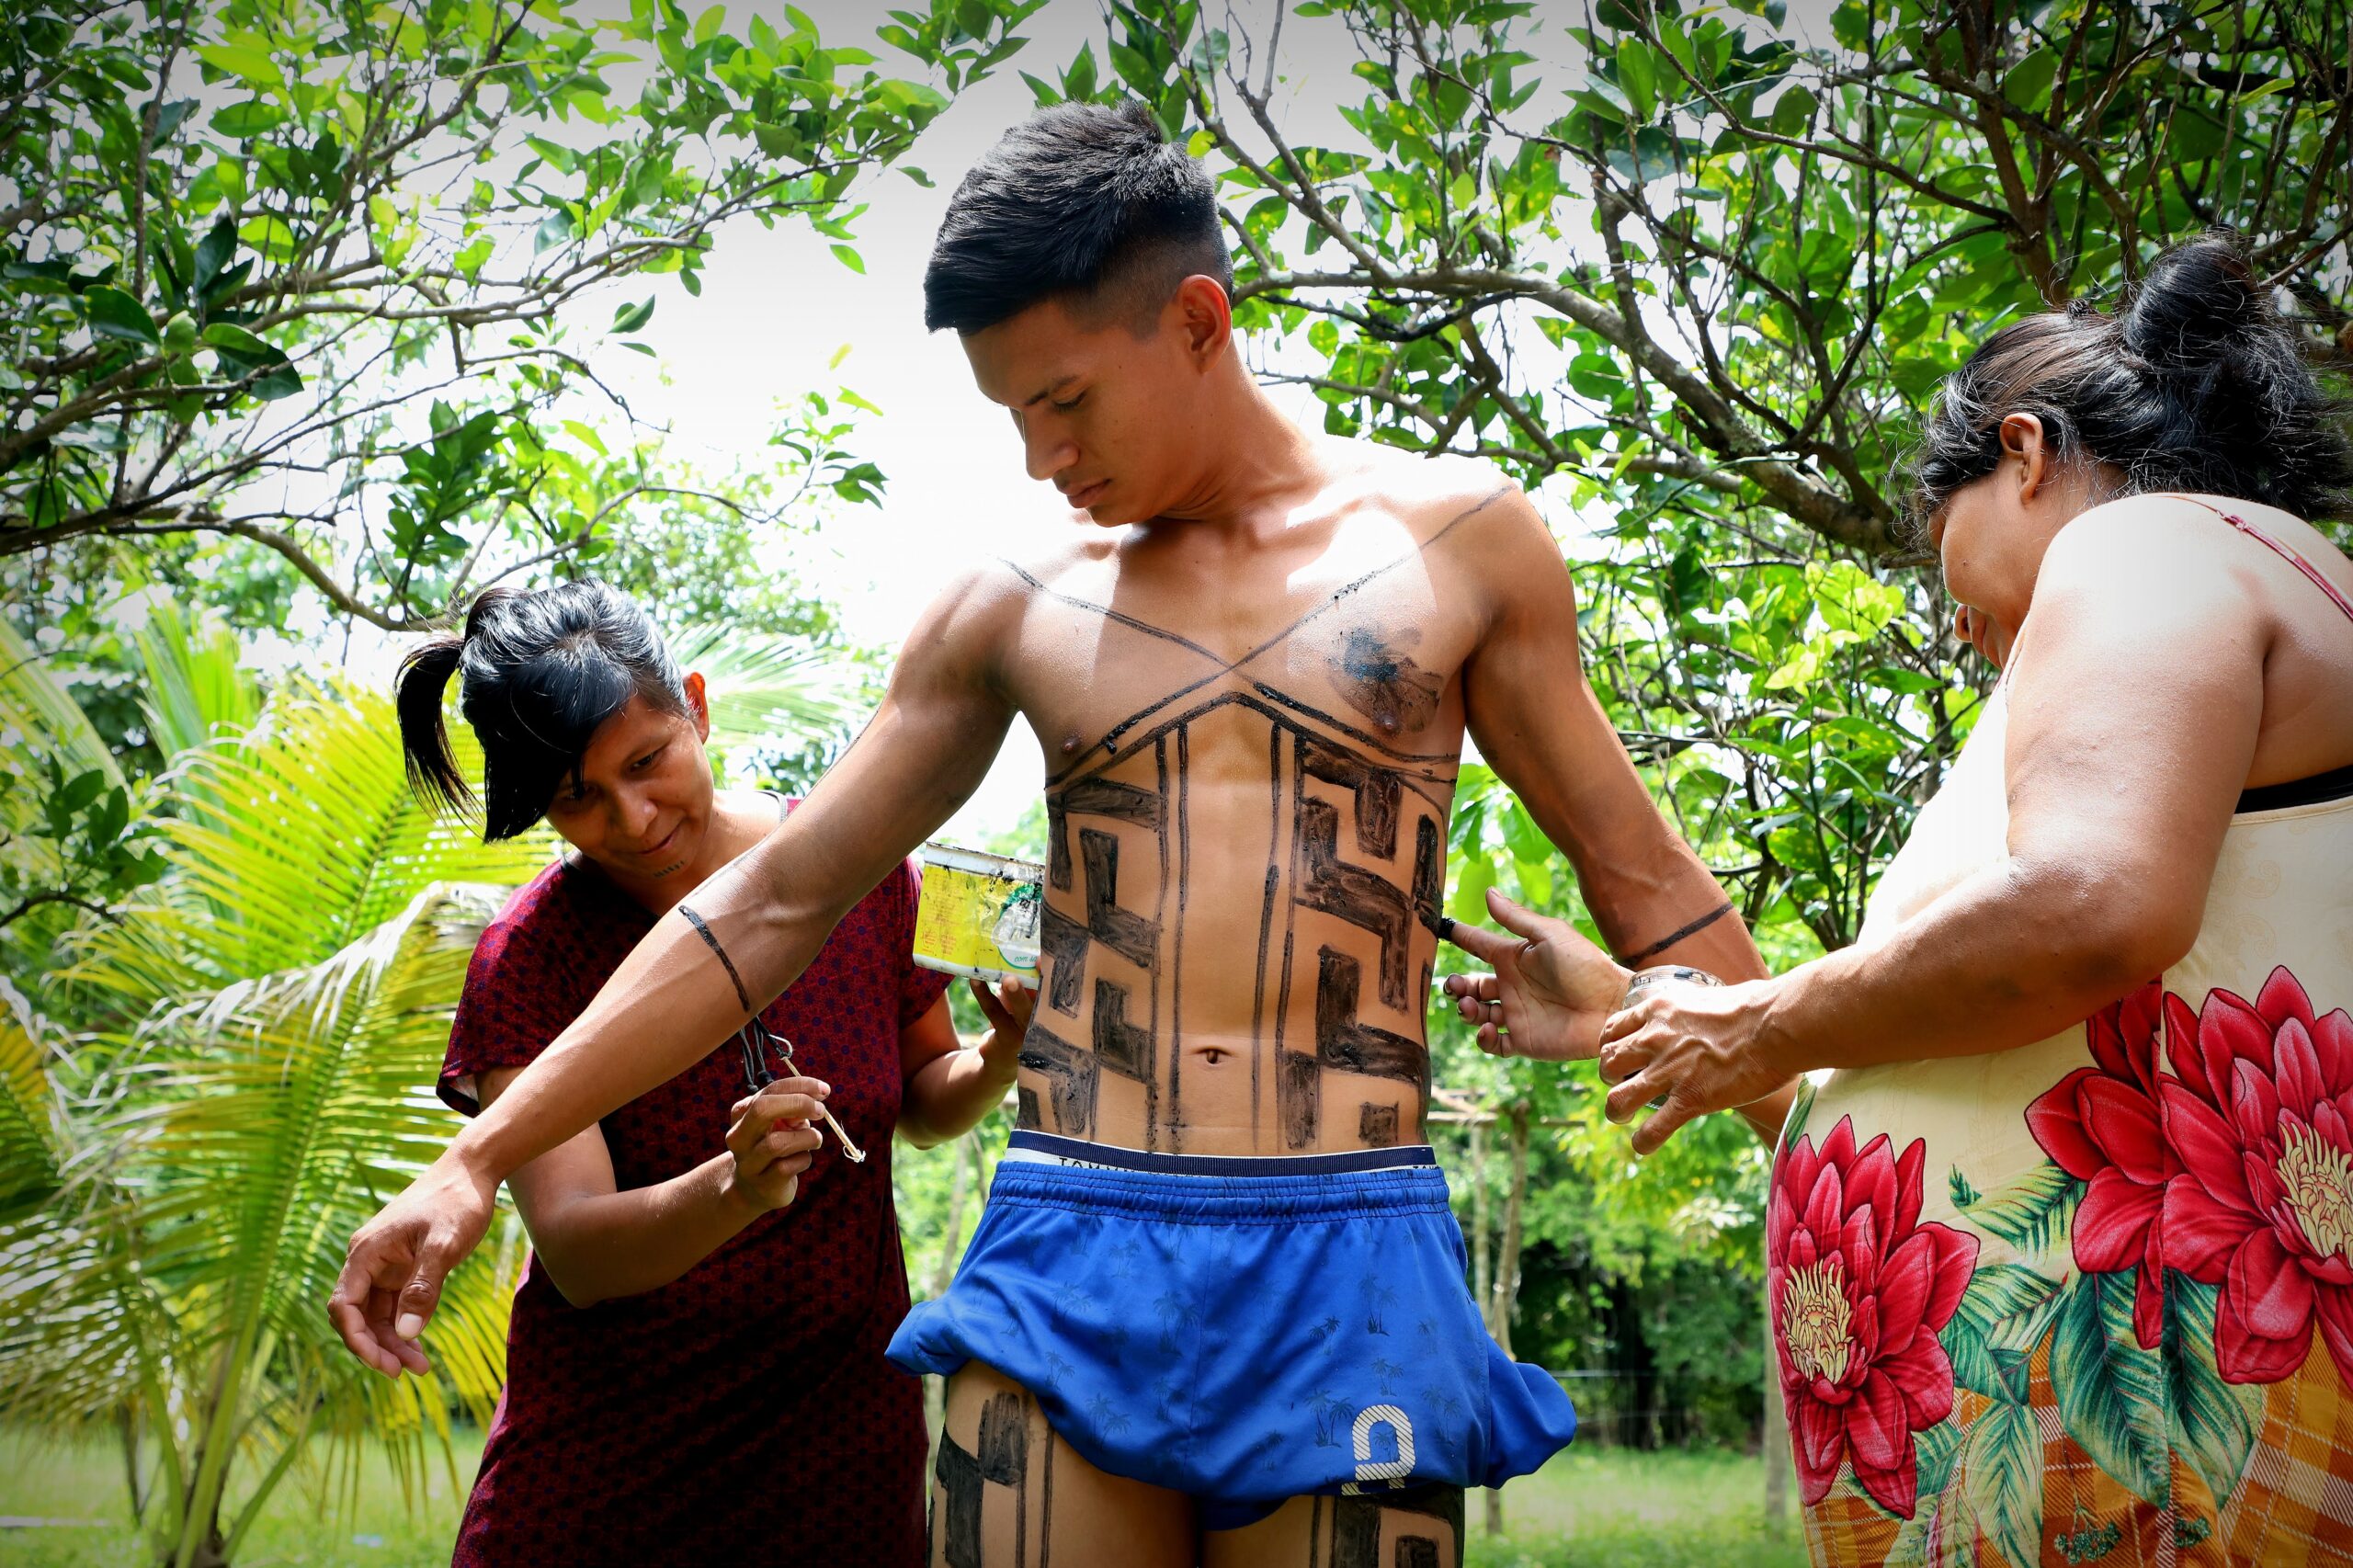 Pinturas fazem parte do ritual para marcar a passagem dos meninos para a vida adulta - Foto - Tharson Lopes/Governo do Tocantins